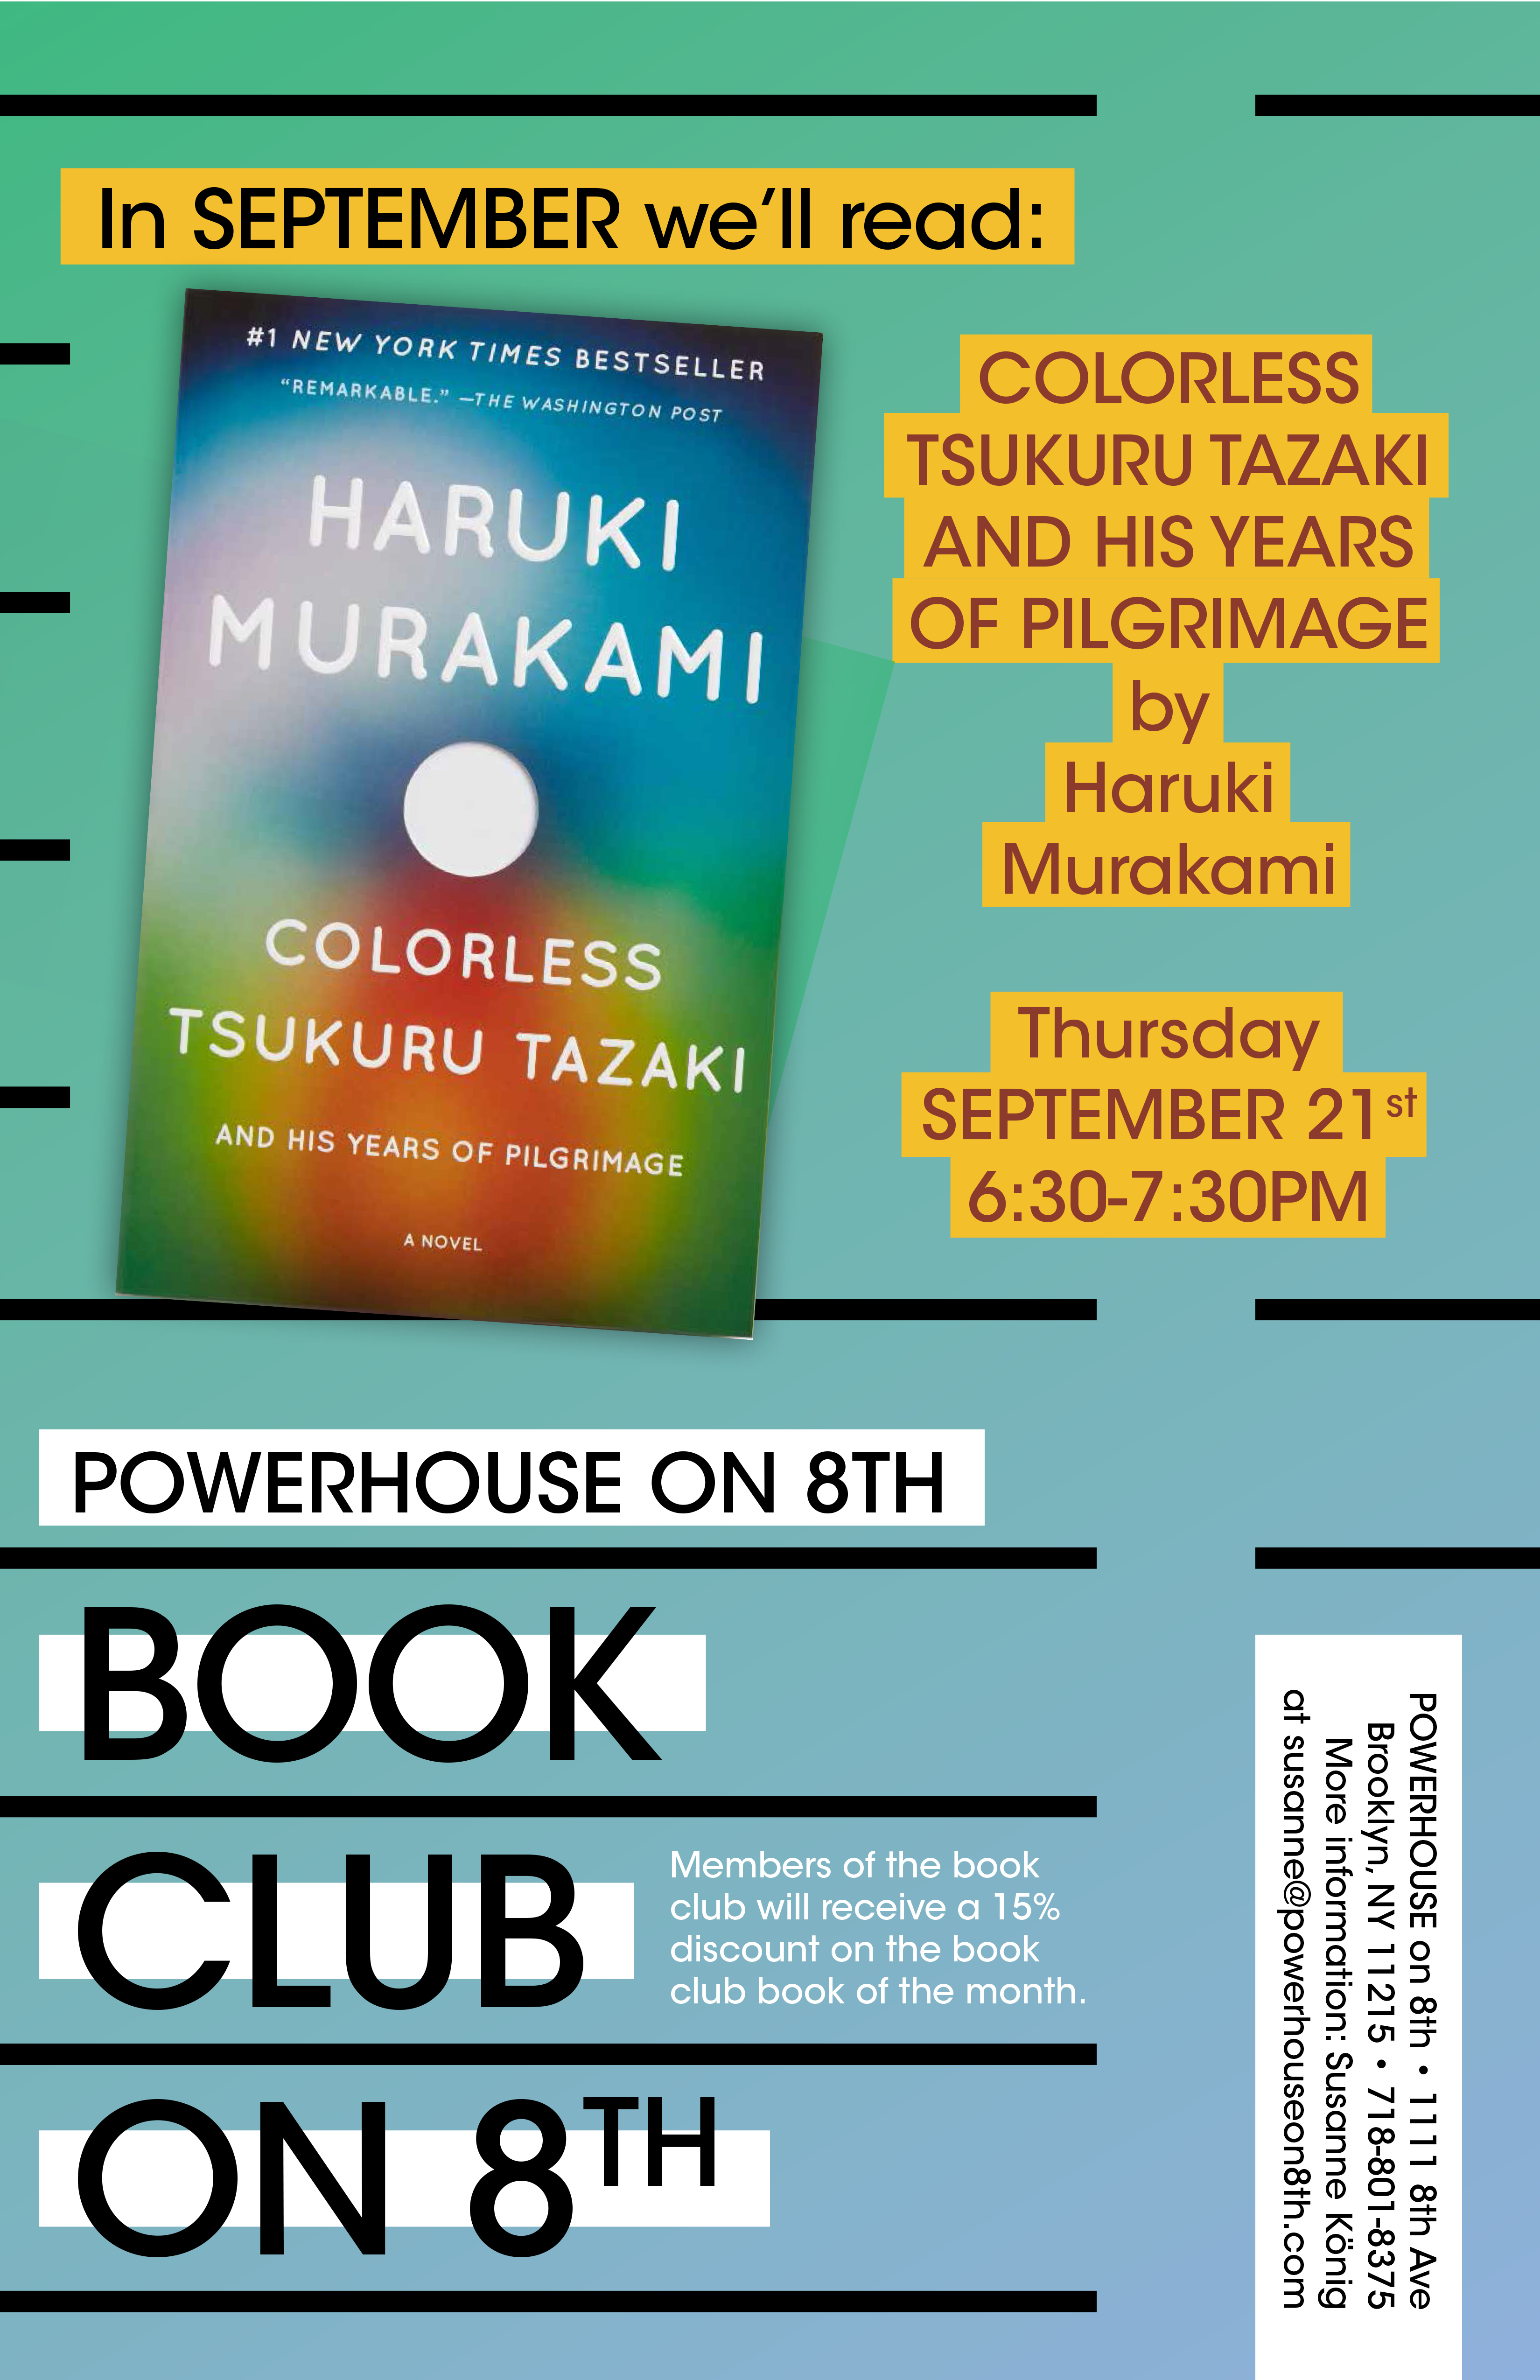 Book Club on 8th: Colorless Tsukuru Tazaki and His Years of Pilgrimage by Haruki Murakami